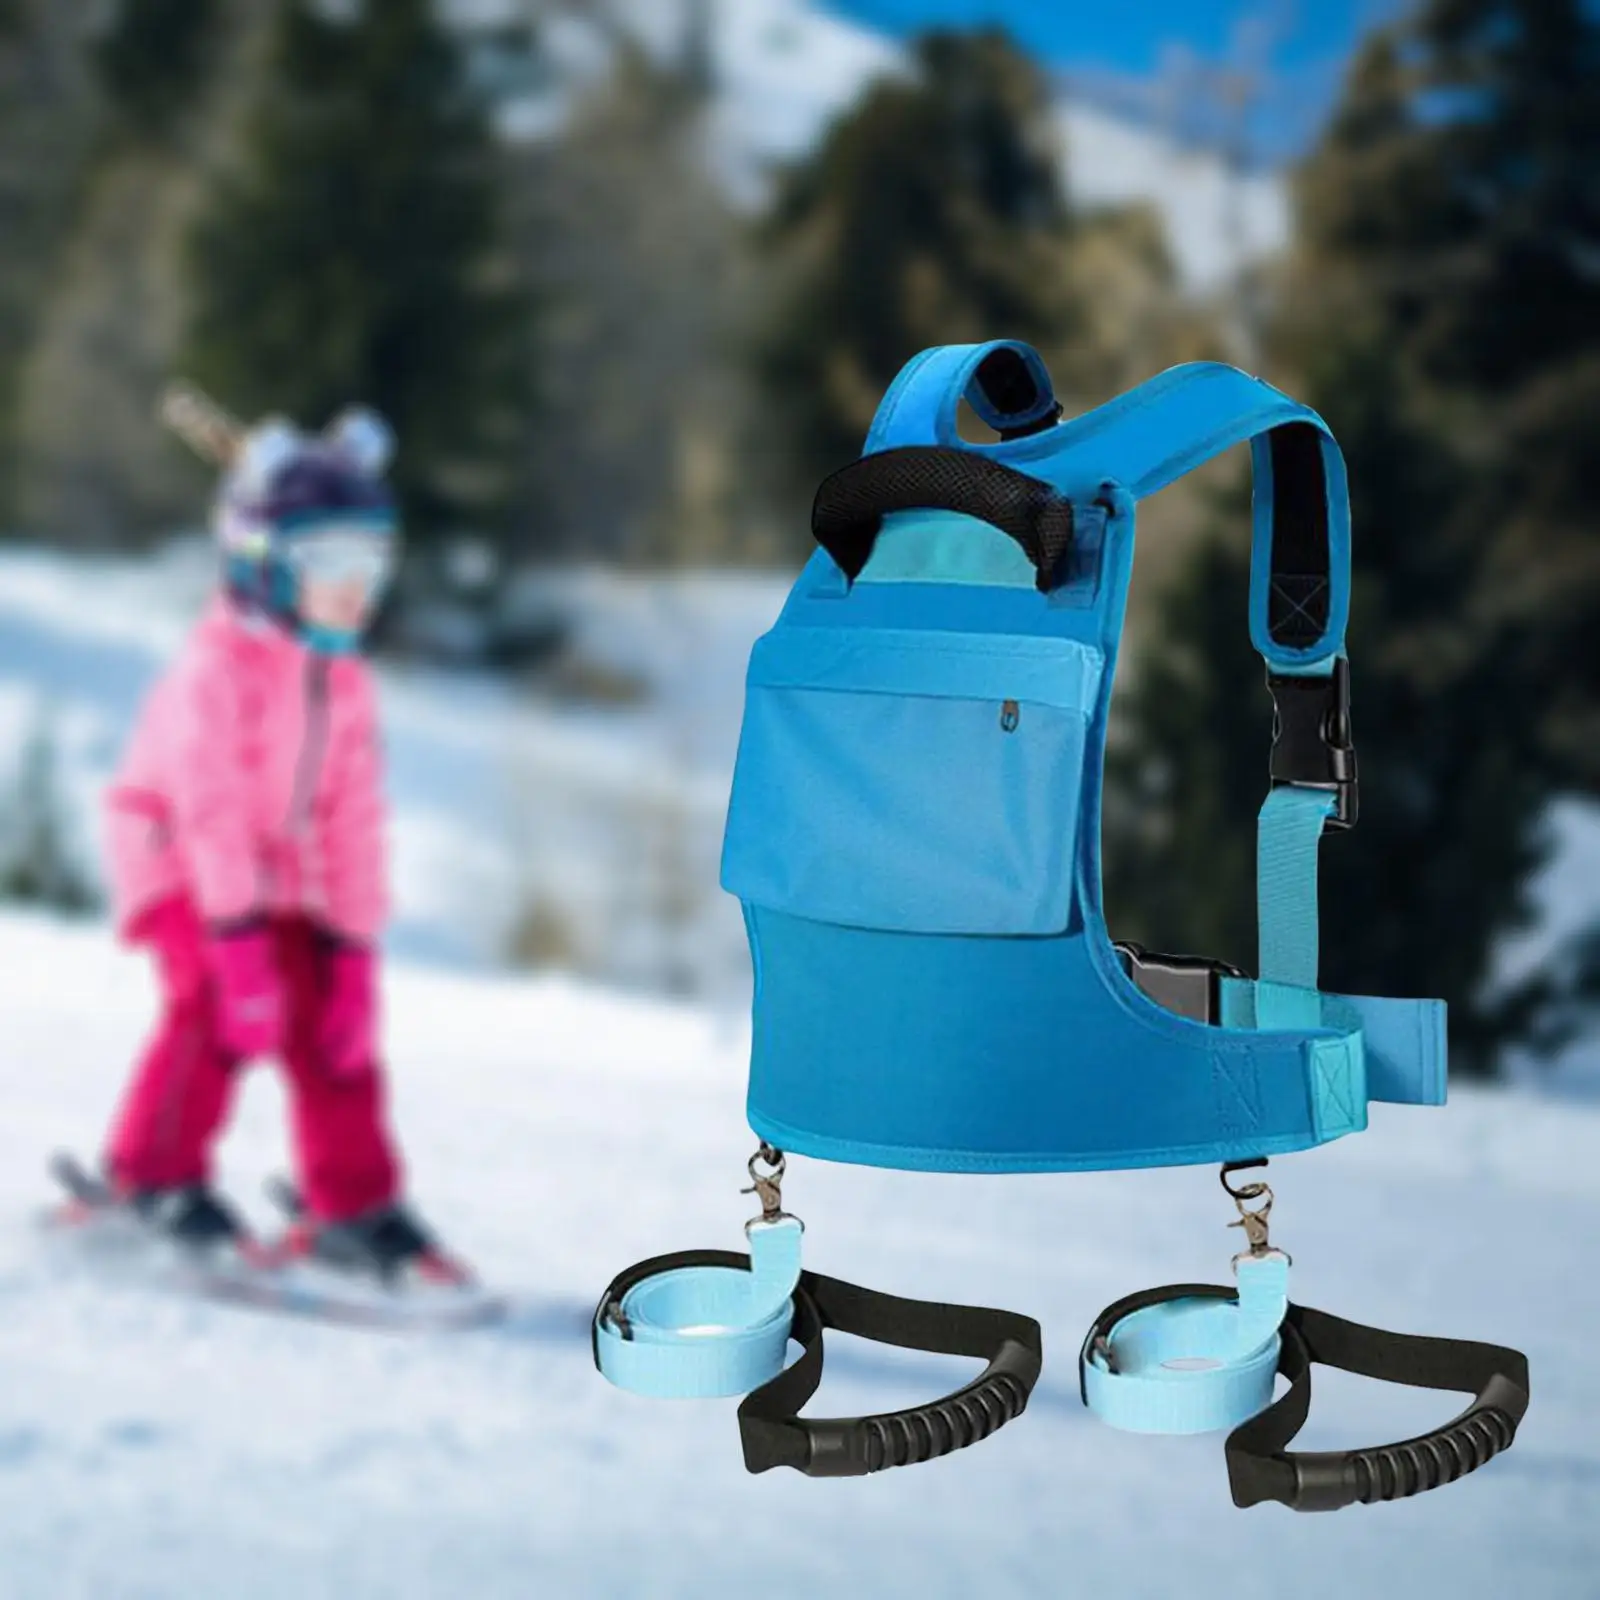 Ski and Snowboard Harness Trainer for Kids Adjustable Shoulder Strap Ski Shoulder Harness for Skateboarding Teaching Training